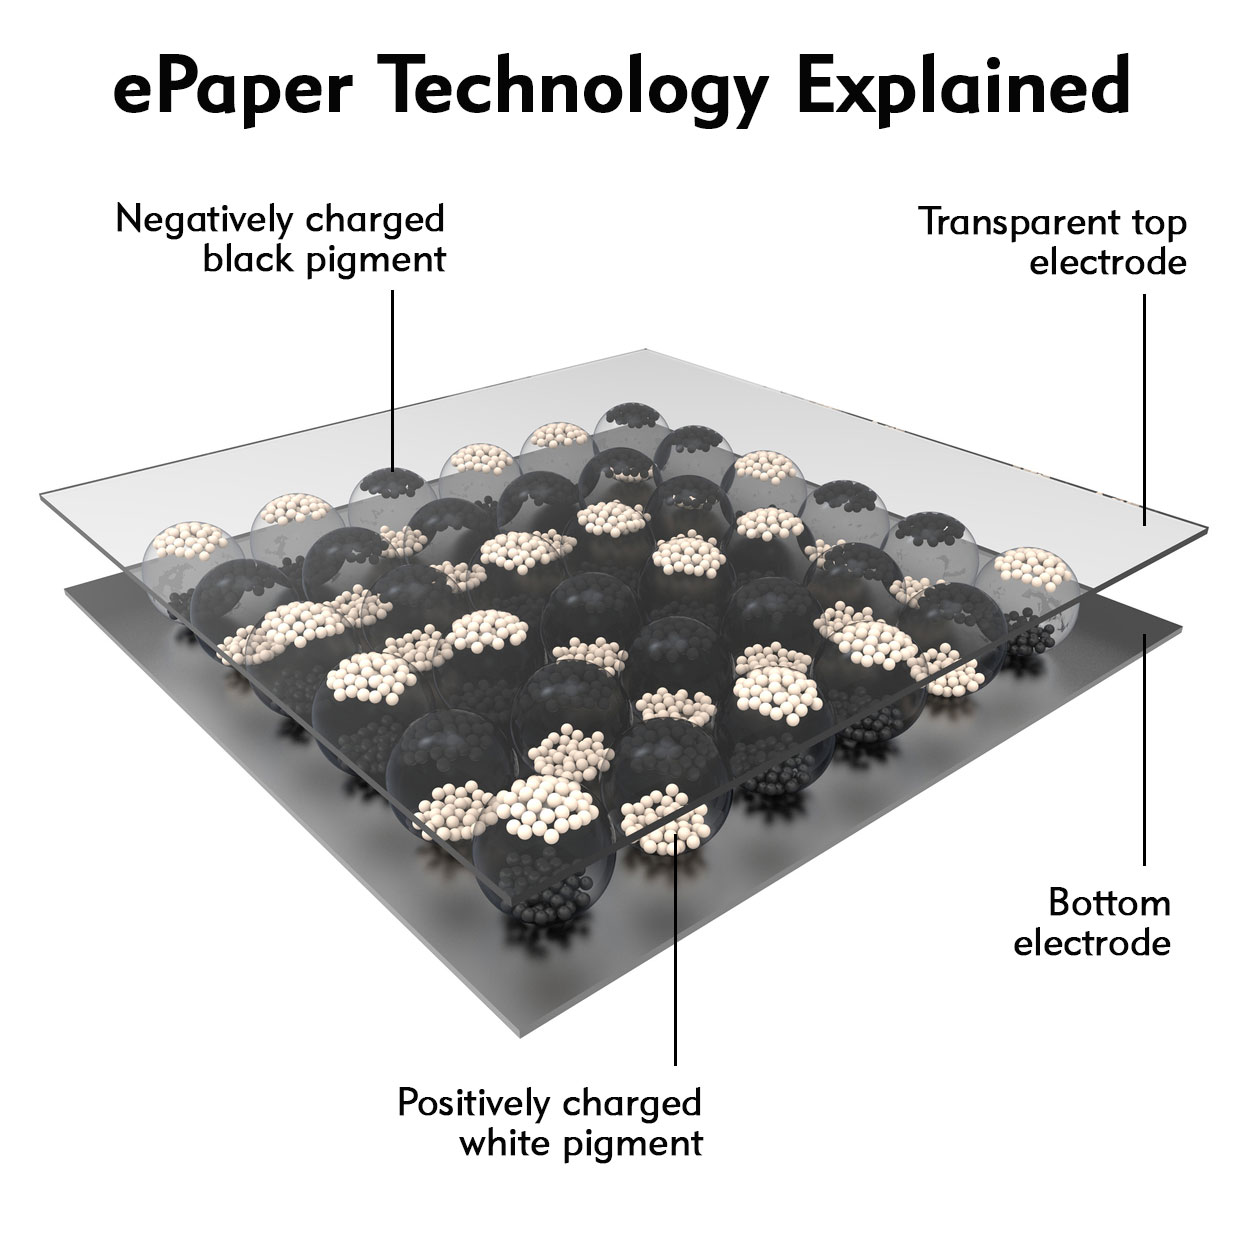 epaper technology explained